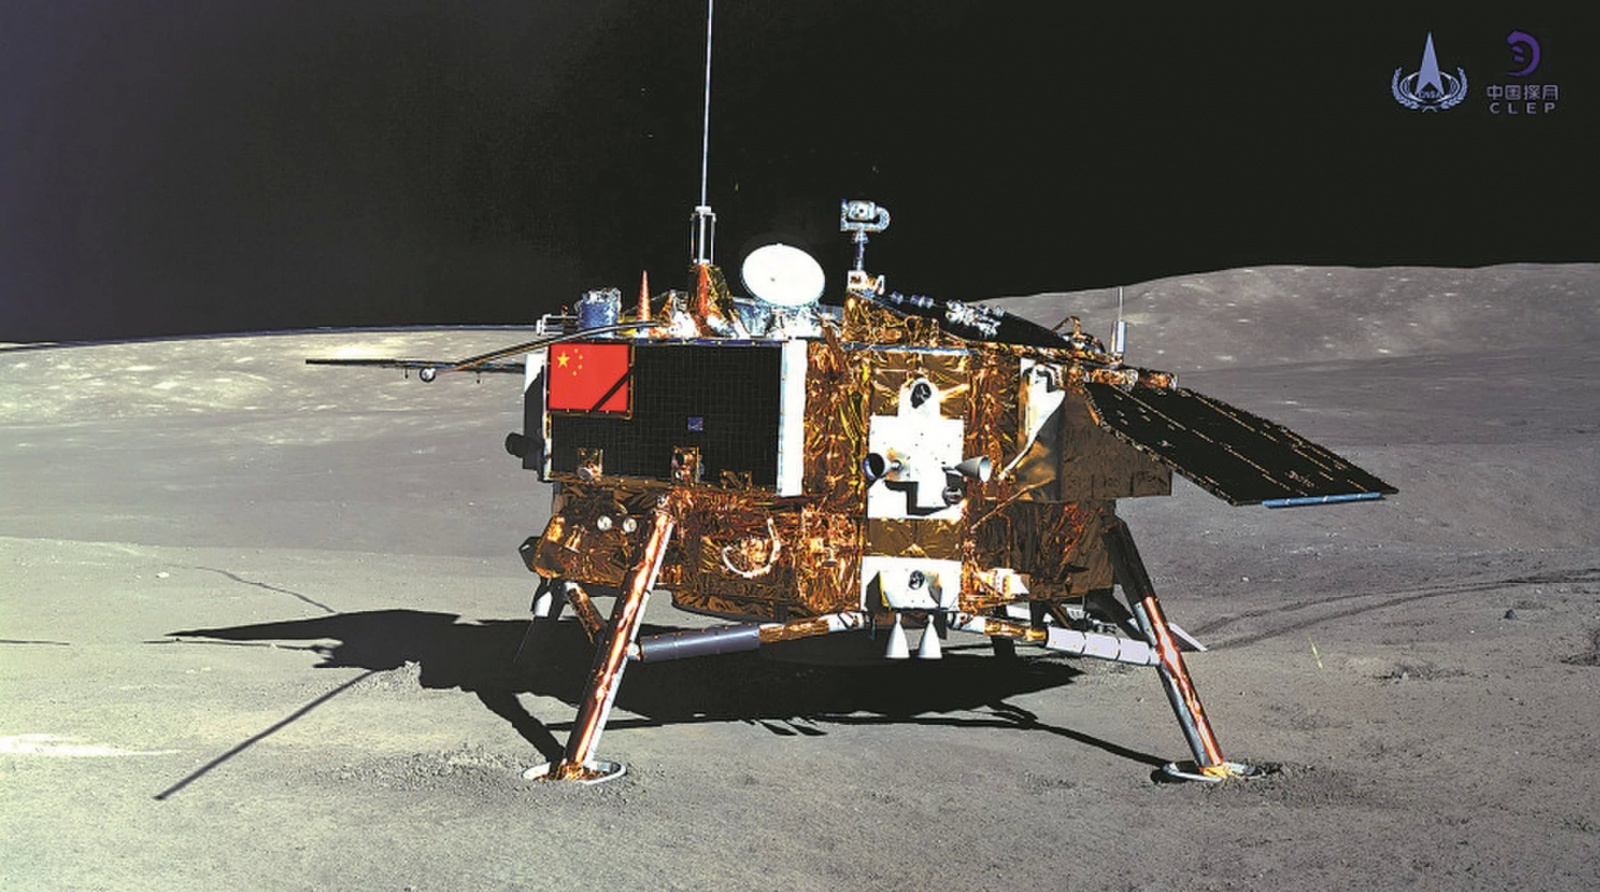 Миссия «Чанъэ-4» — пятый лунный день для посадочного модуля и ровера «Юйту-2» - 2